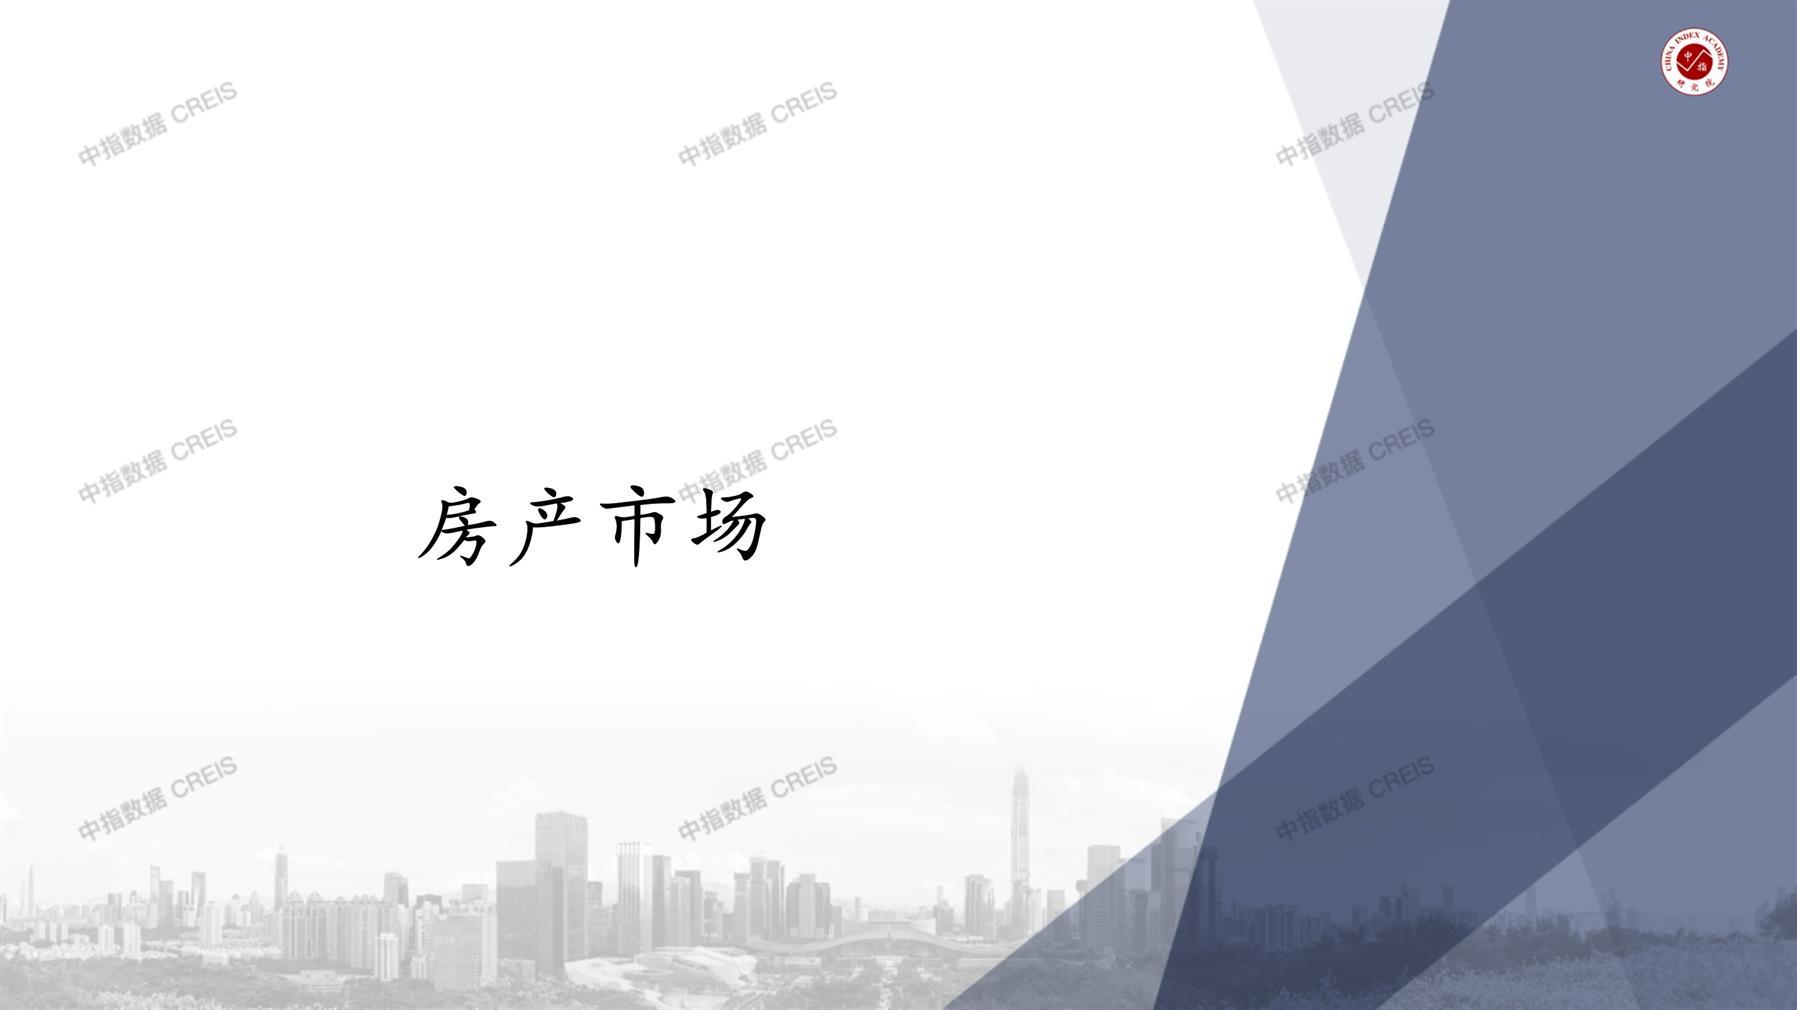 深圳、深圳房地产市场、商品房销售、住宅成交、土地市场、地块面积、深圳写字楼